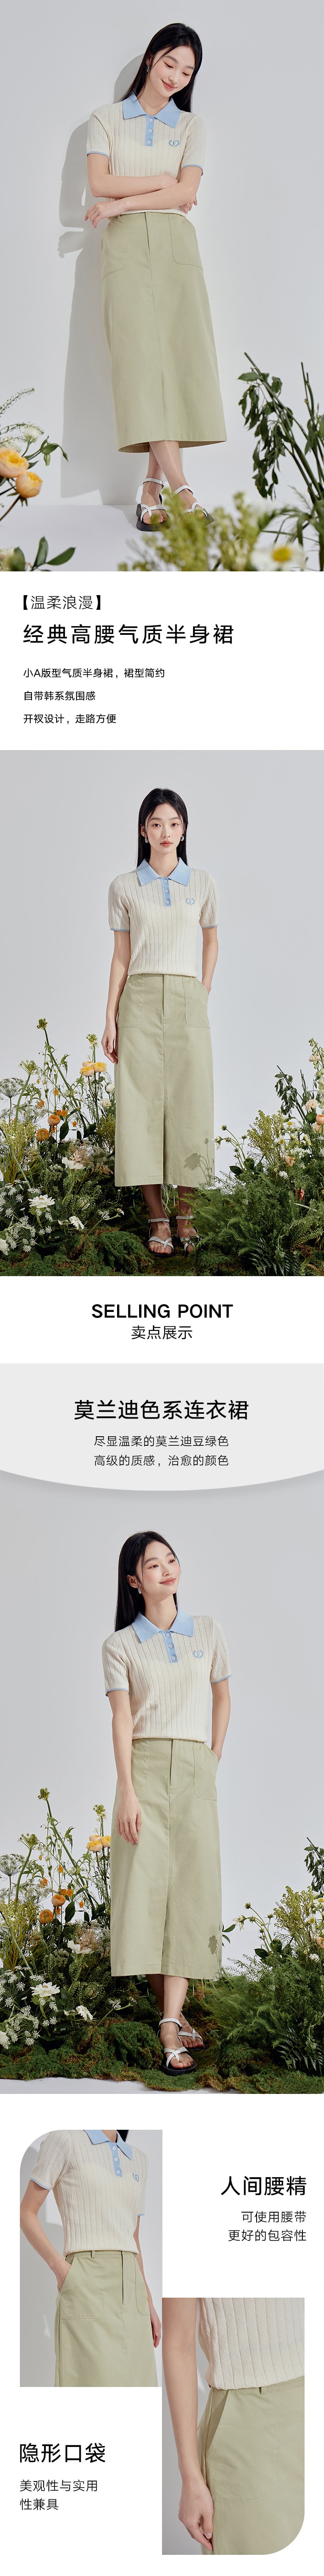 【中国直邮】HSPM 新款经典高腰气质半身裙 豆绿色 M